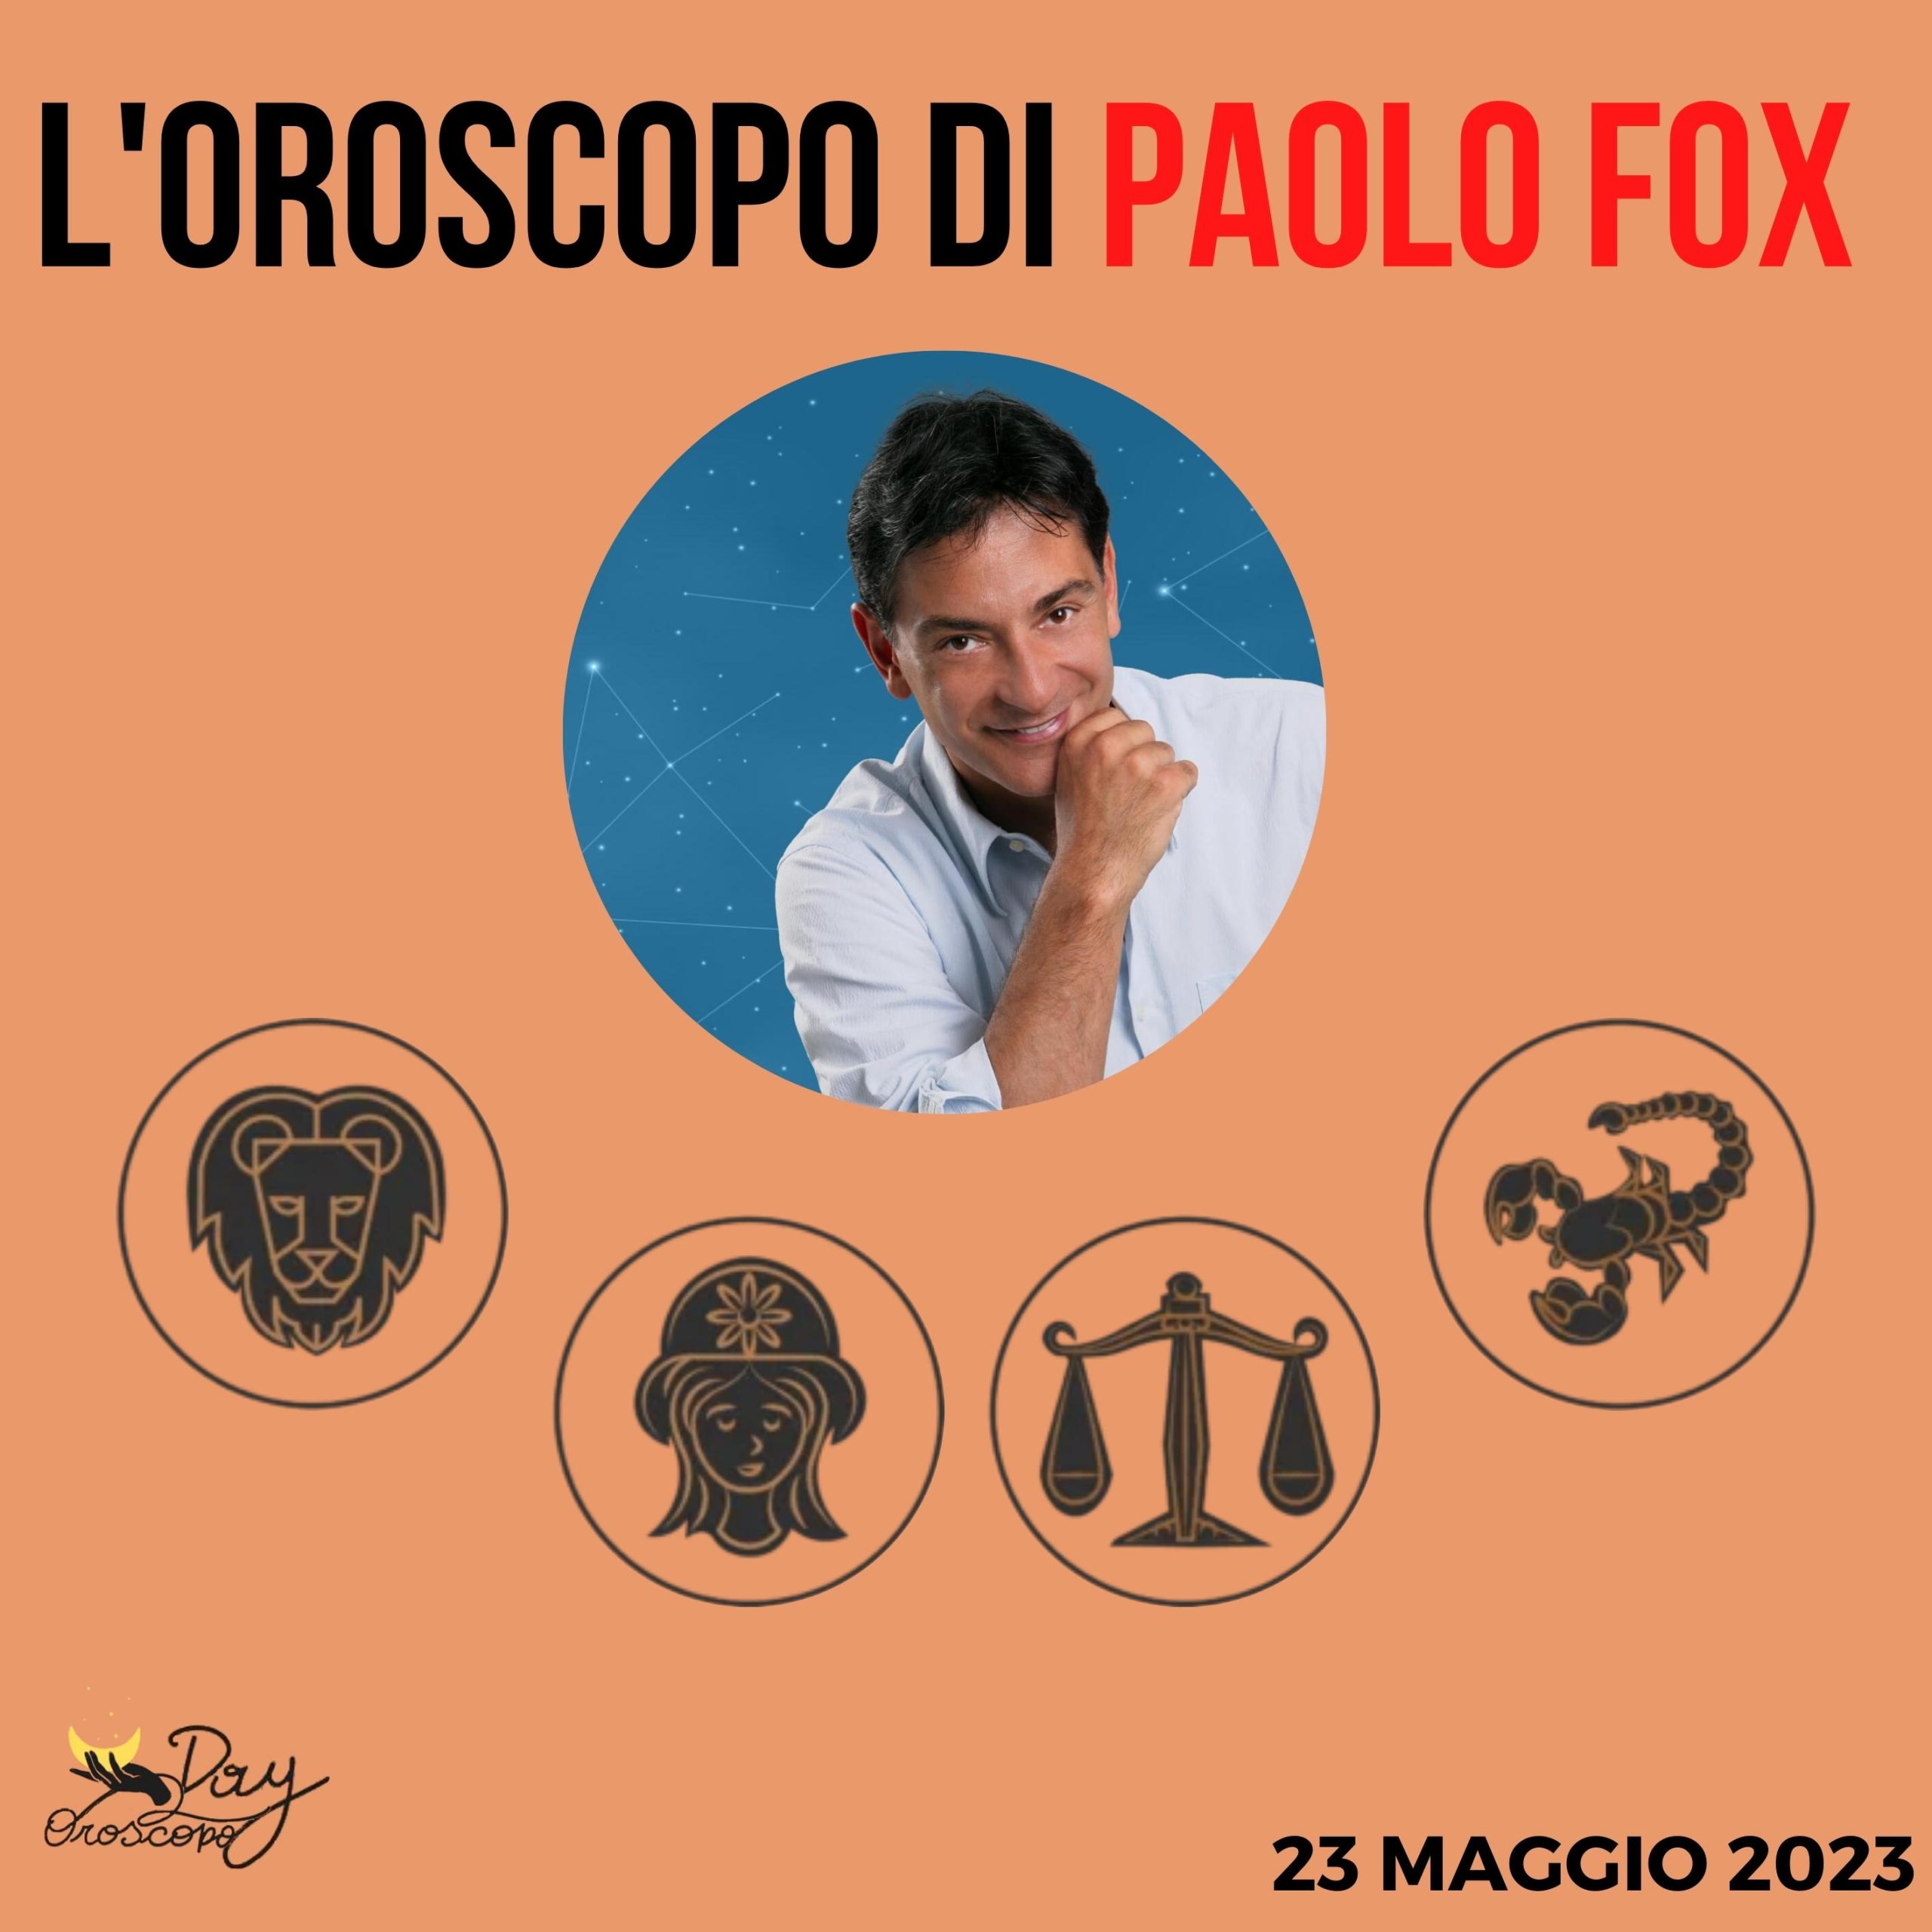 Oroscopo oggi domani Fox 23 maggio Leone Vergine Bilancia Scorpione